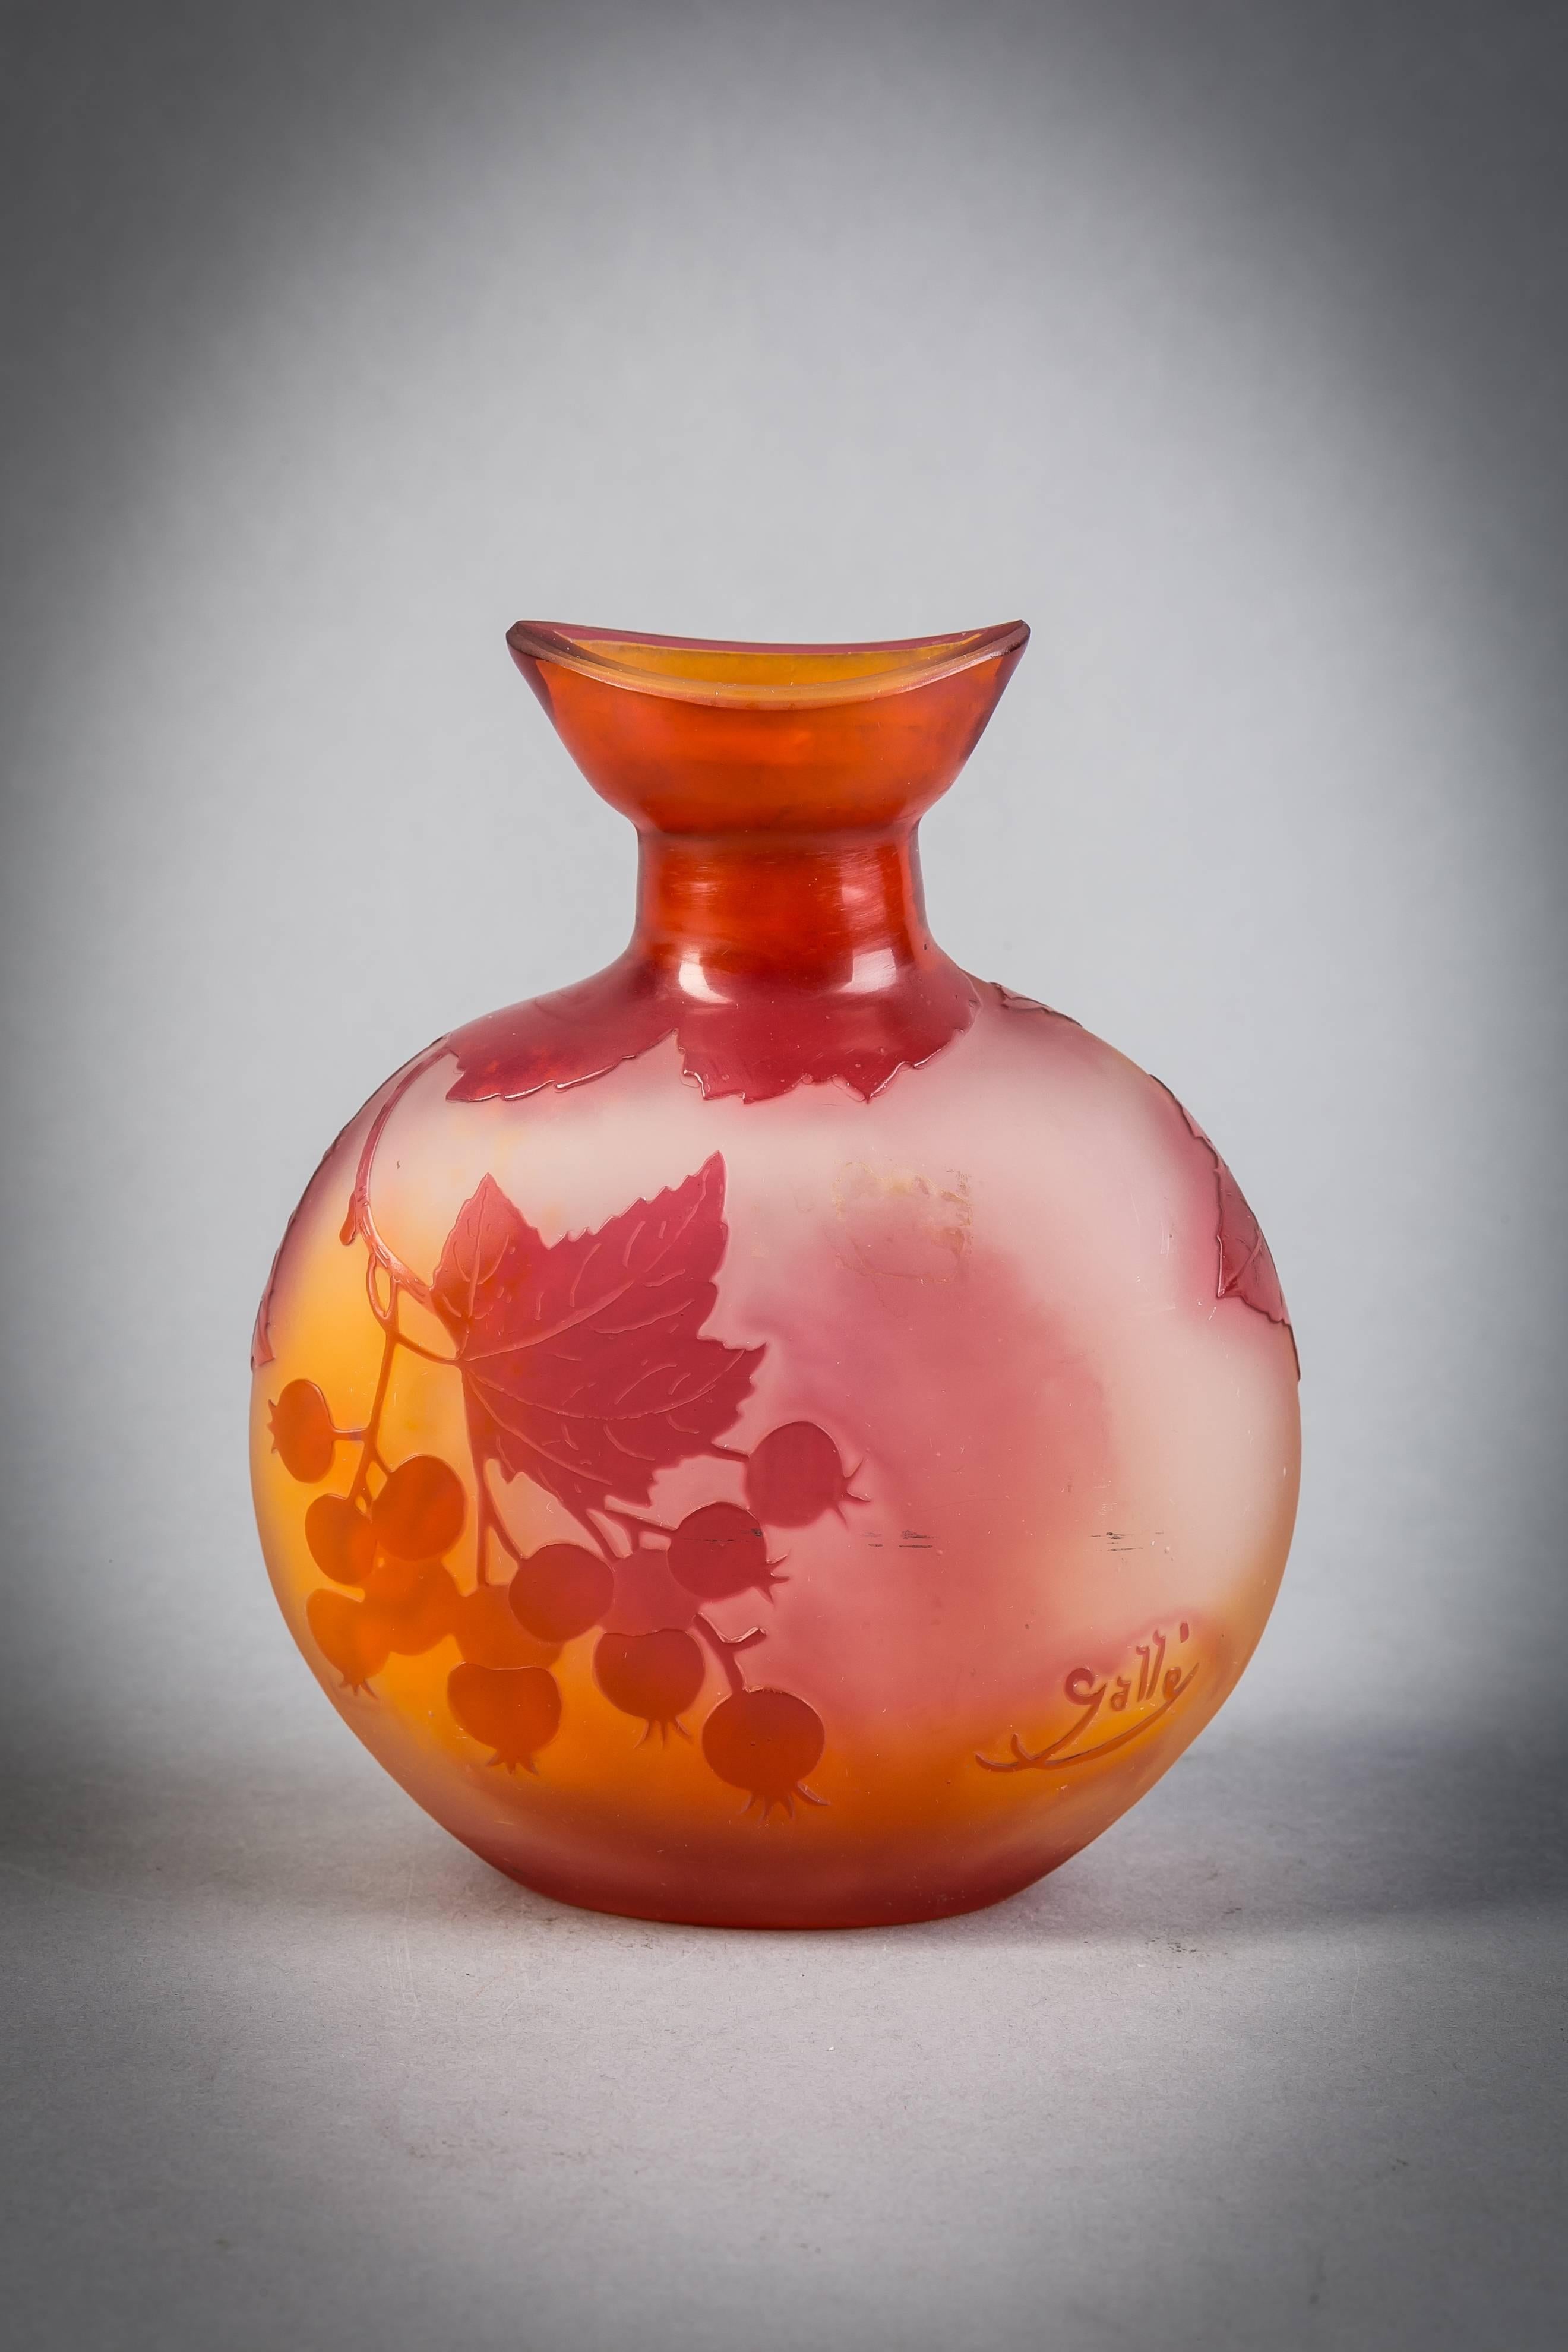 Galle Cameo glass vase, circa 1900.